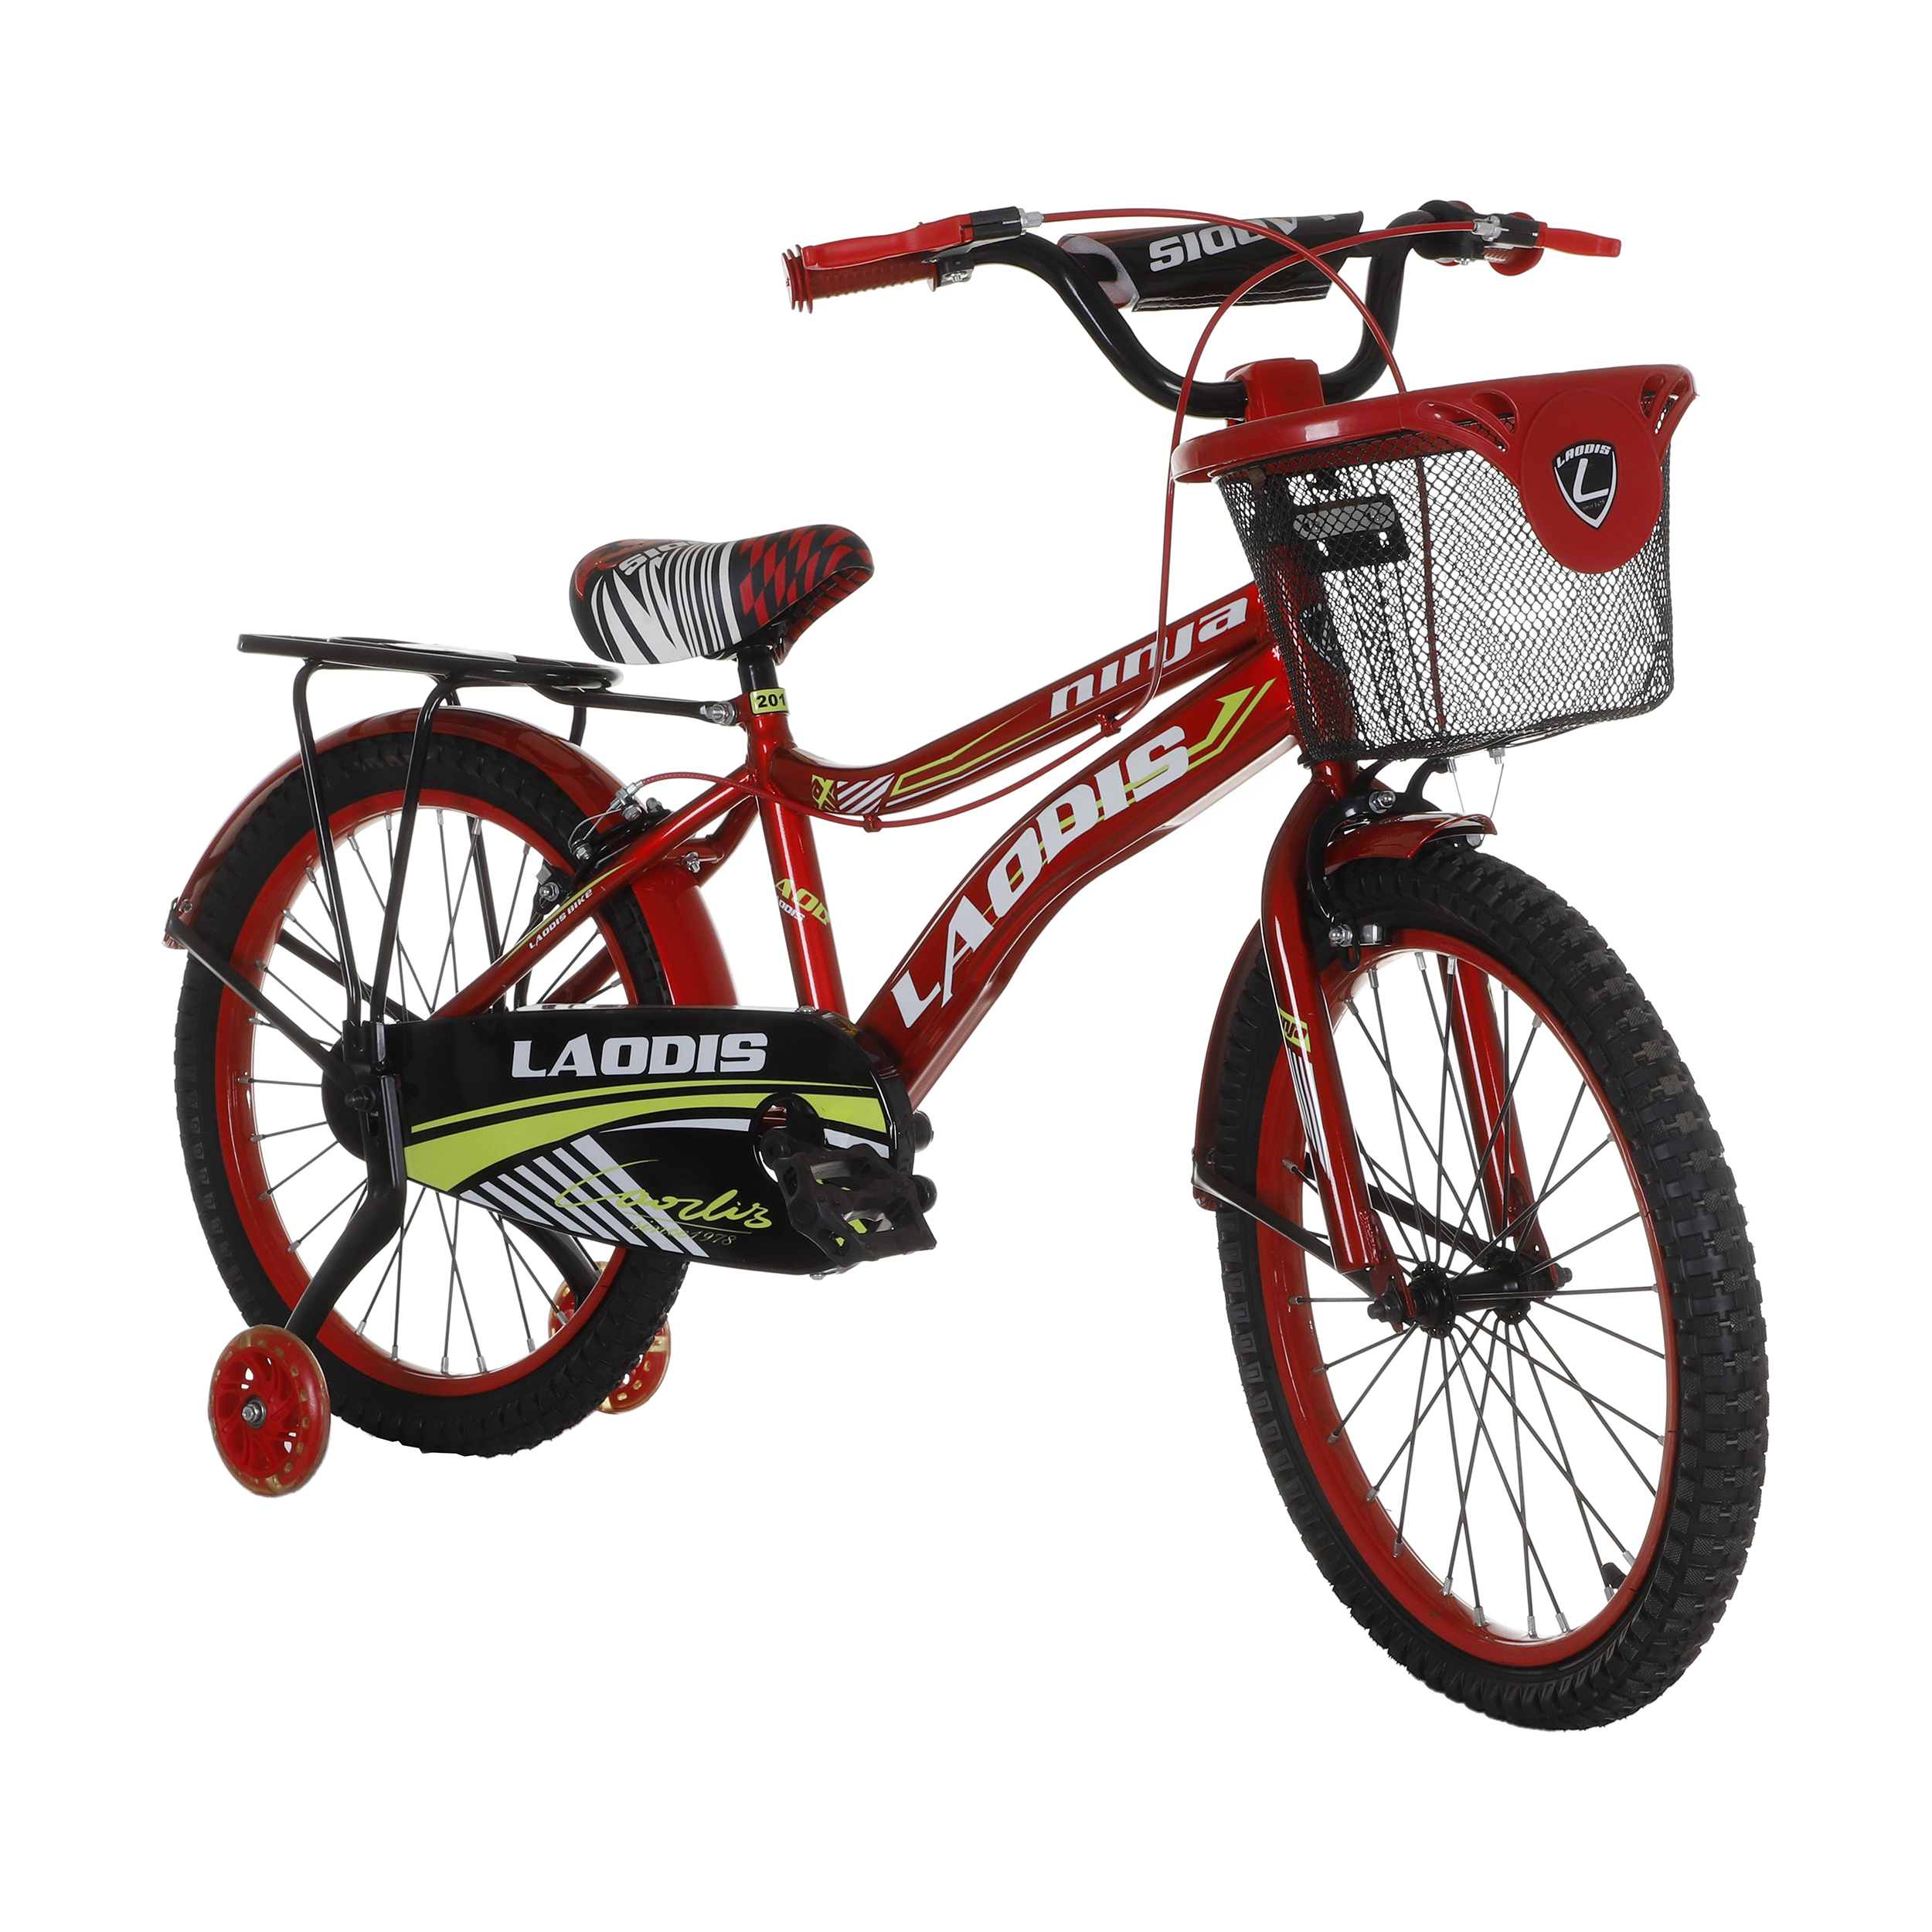 نکته خرید - قیمت روز دوچرخه شهری لاودیس مدل 20133 کد 001 سایز 20 خرید